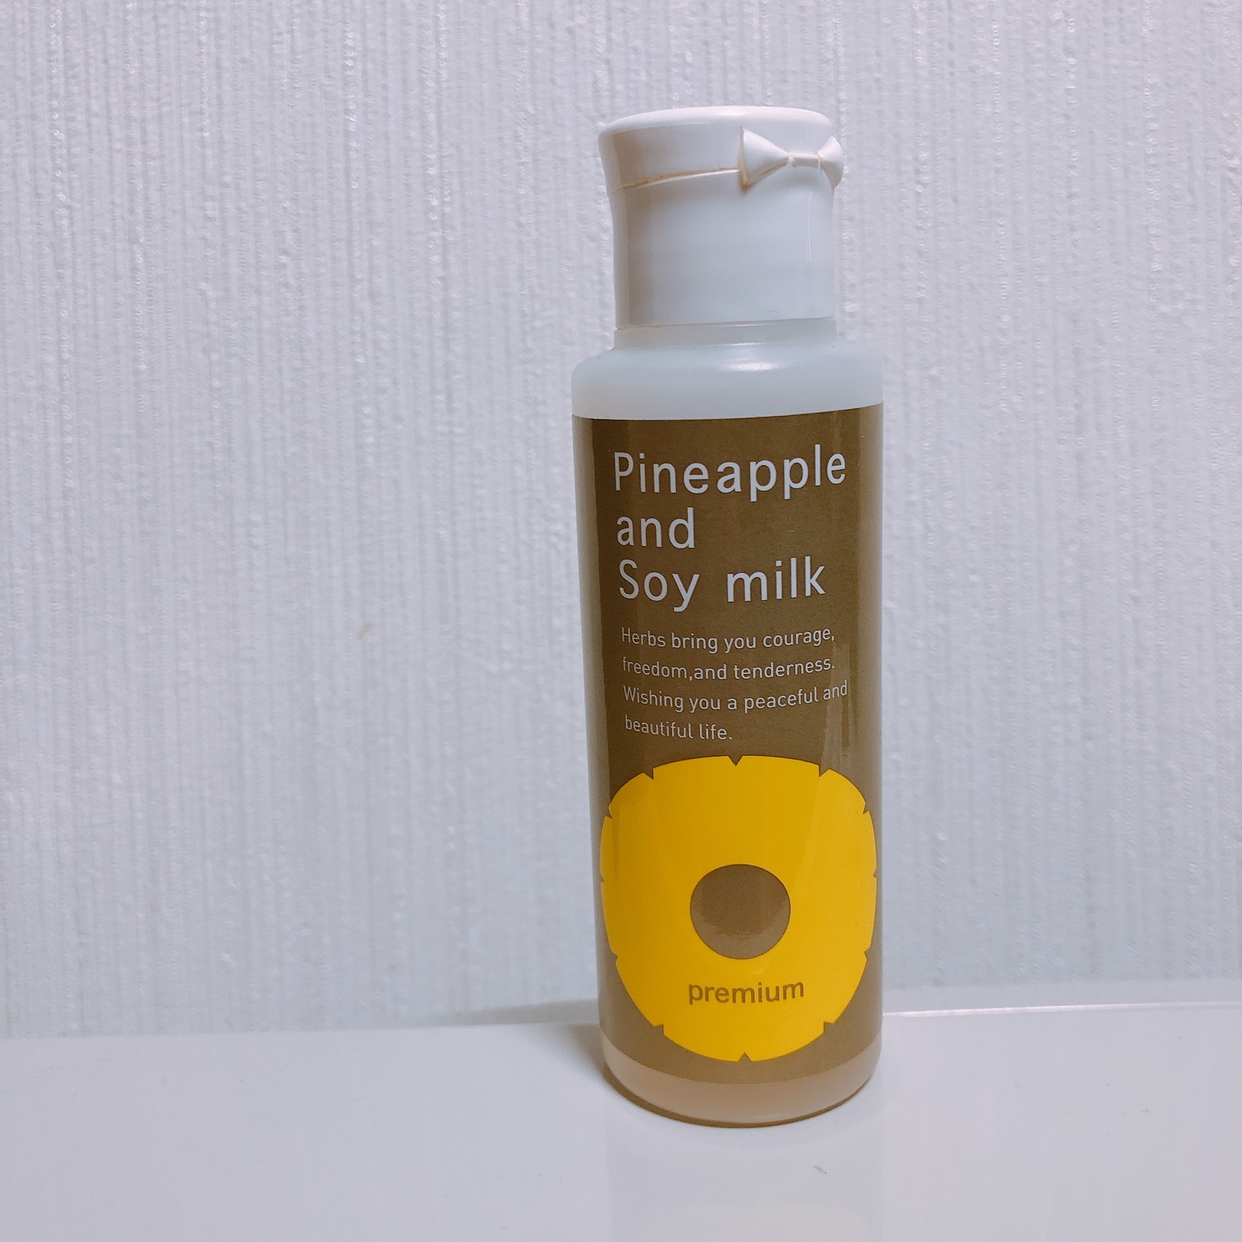 鈴木ハーブ研究所(すずきはーぶけんきゅうしょ) パイナップル豆乳ローションプレミアムを使ったRSmamanさんのクチコミ画像1